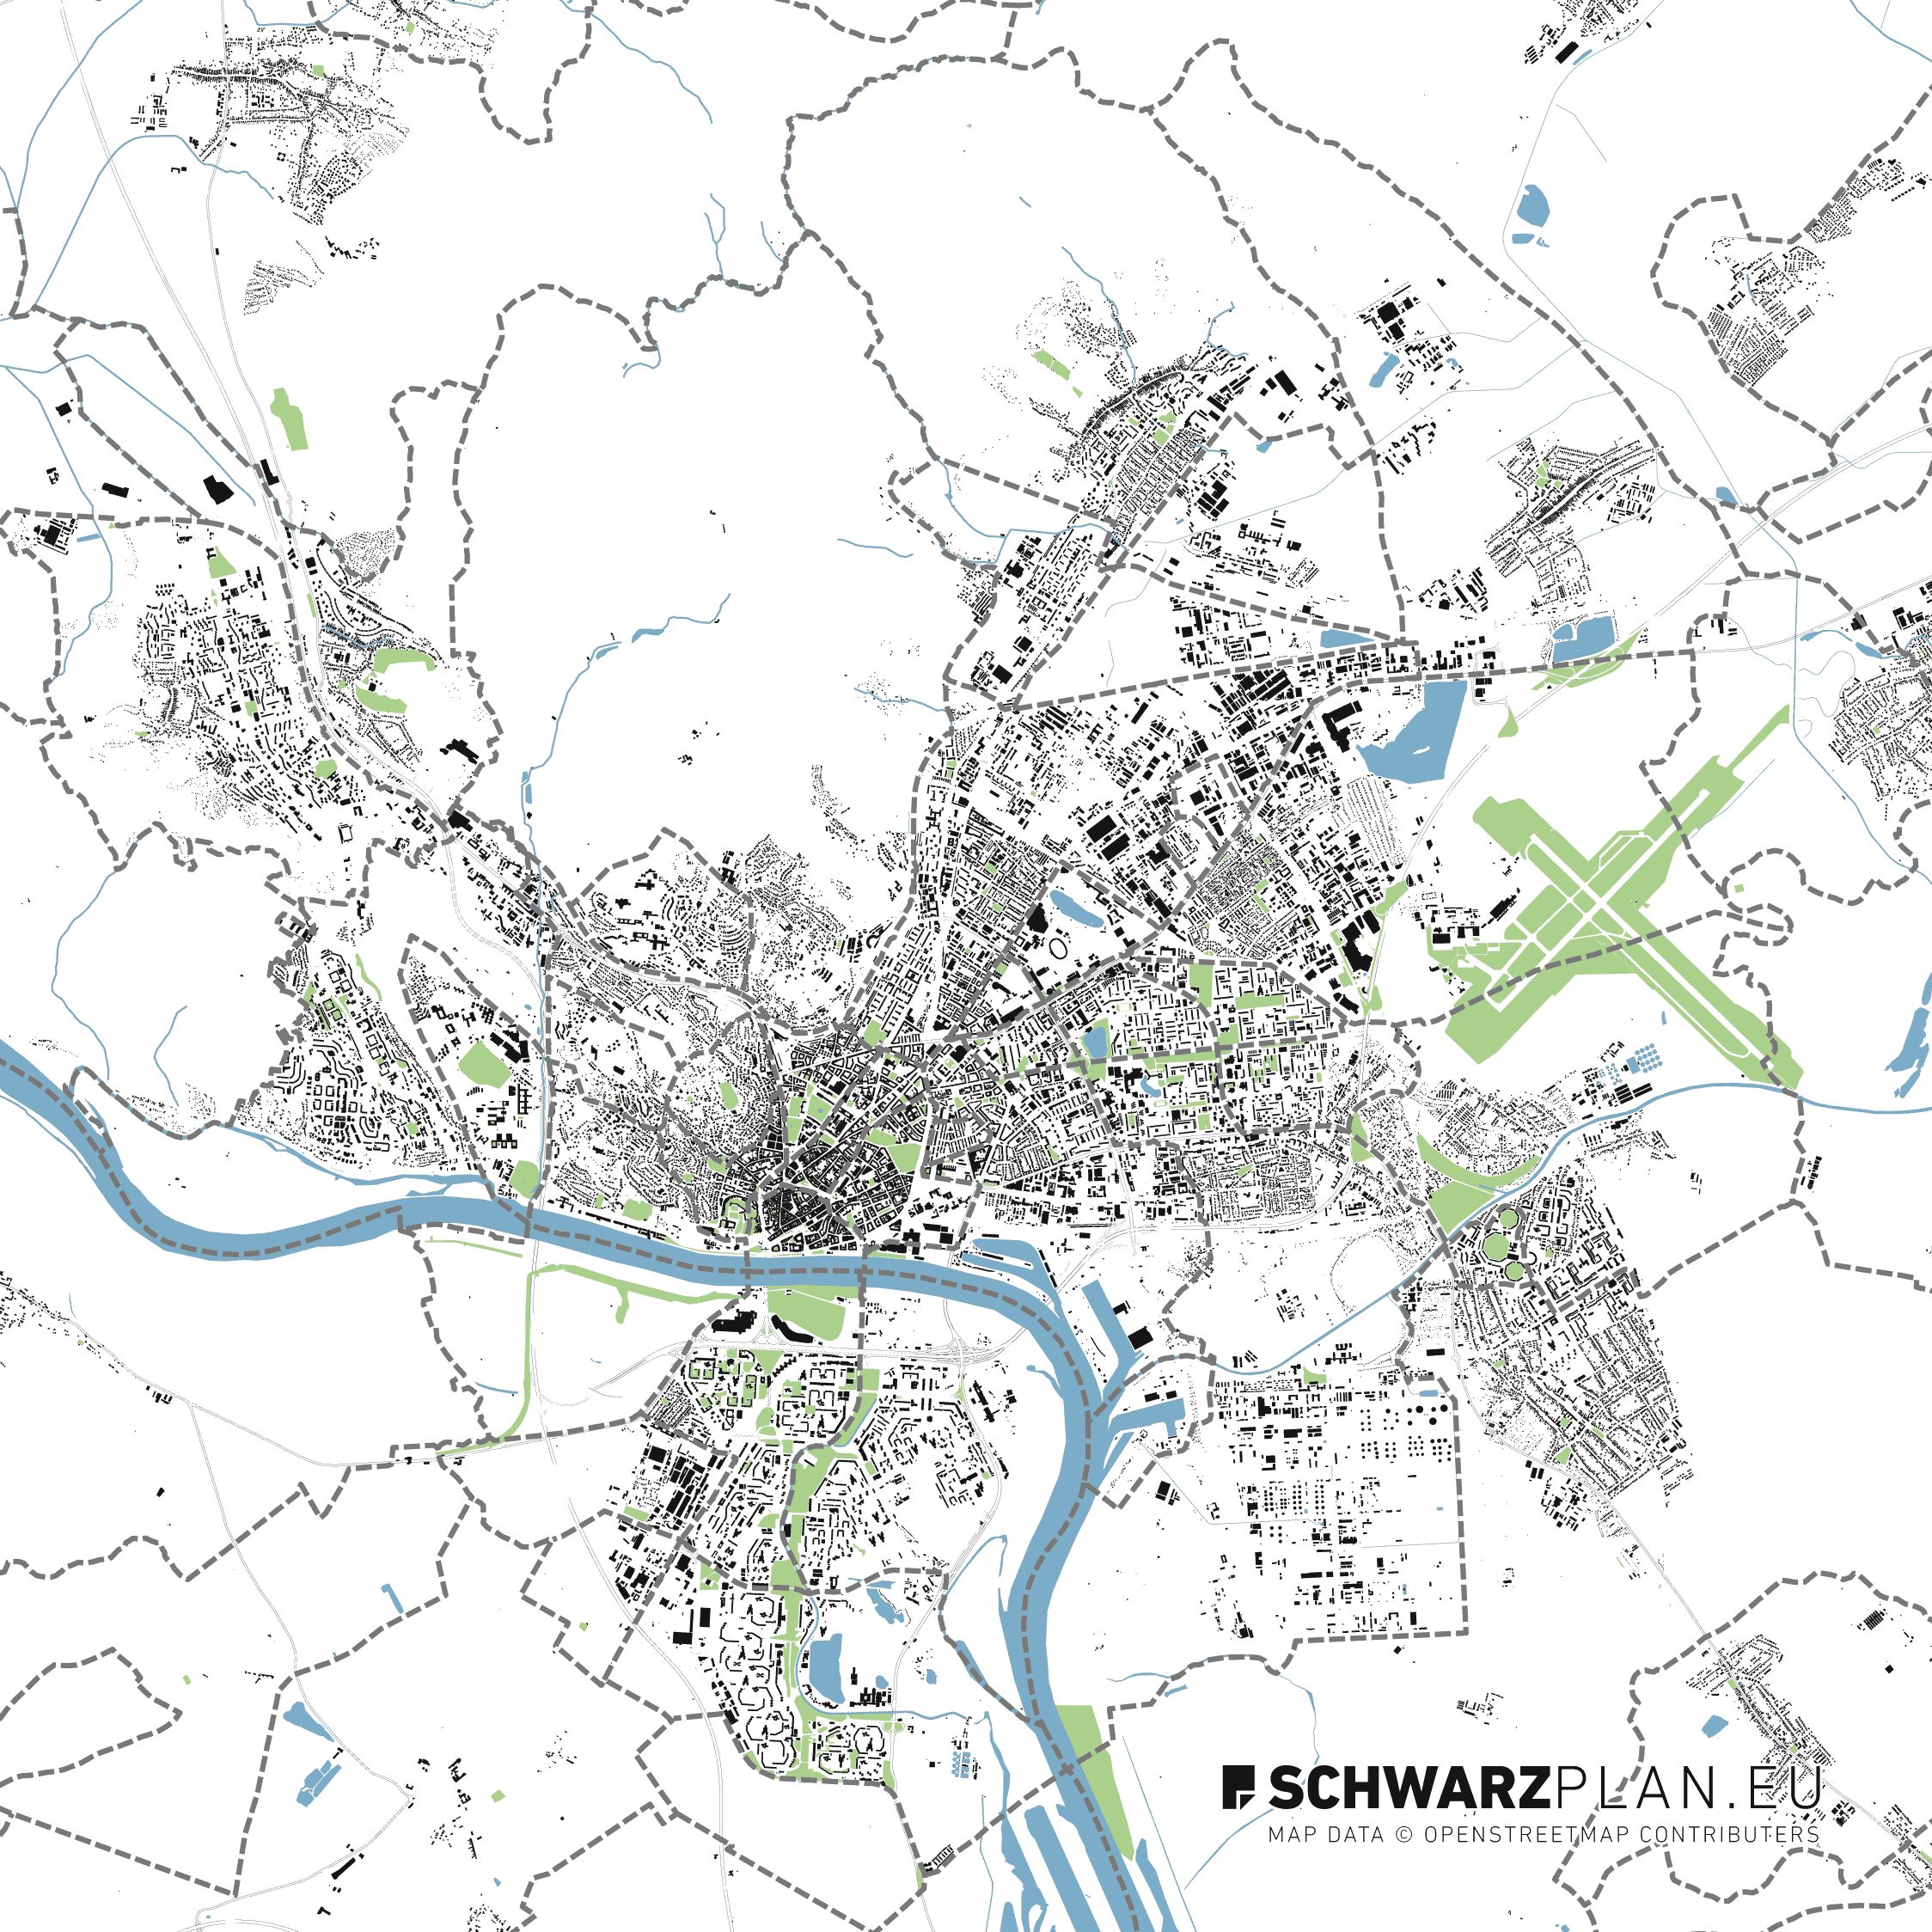 Schwarzplan von Bratislava